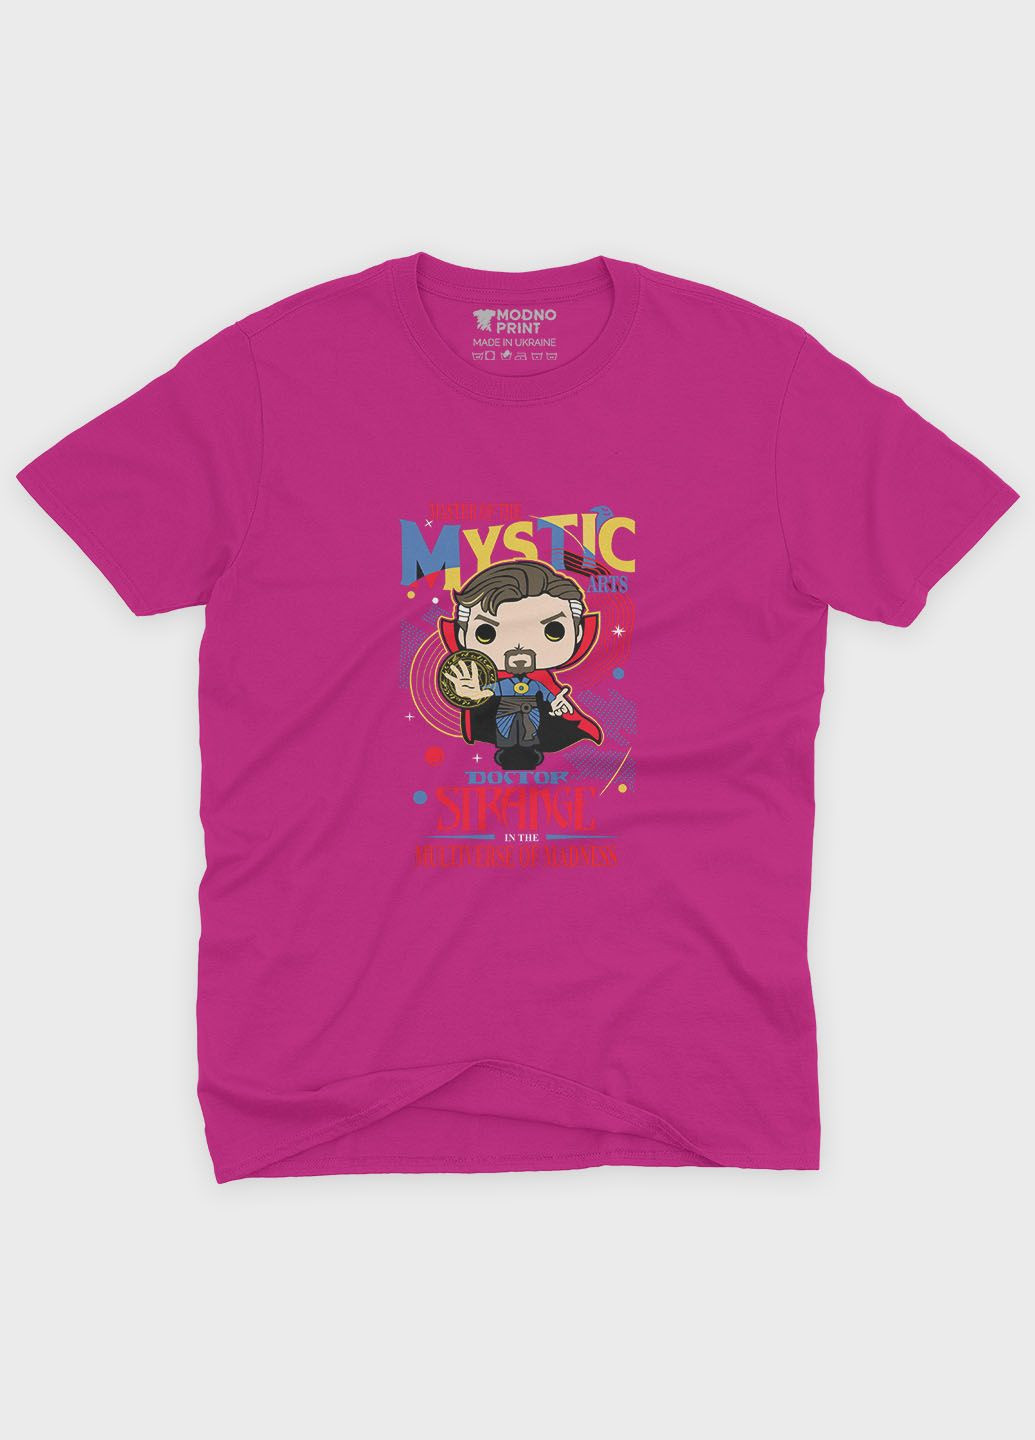 Розовая демисезонная футболка для мальчика с принтом супергероя - доктор стрэндж (ts001-1-fuxj-006-020-006-b) Modno